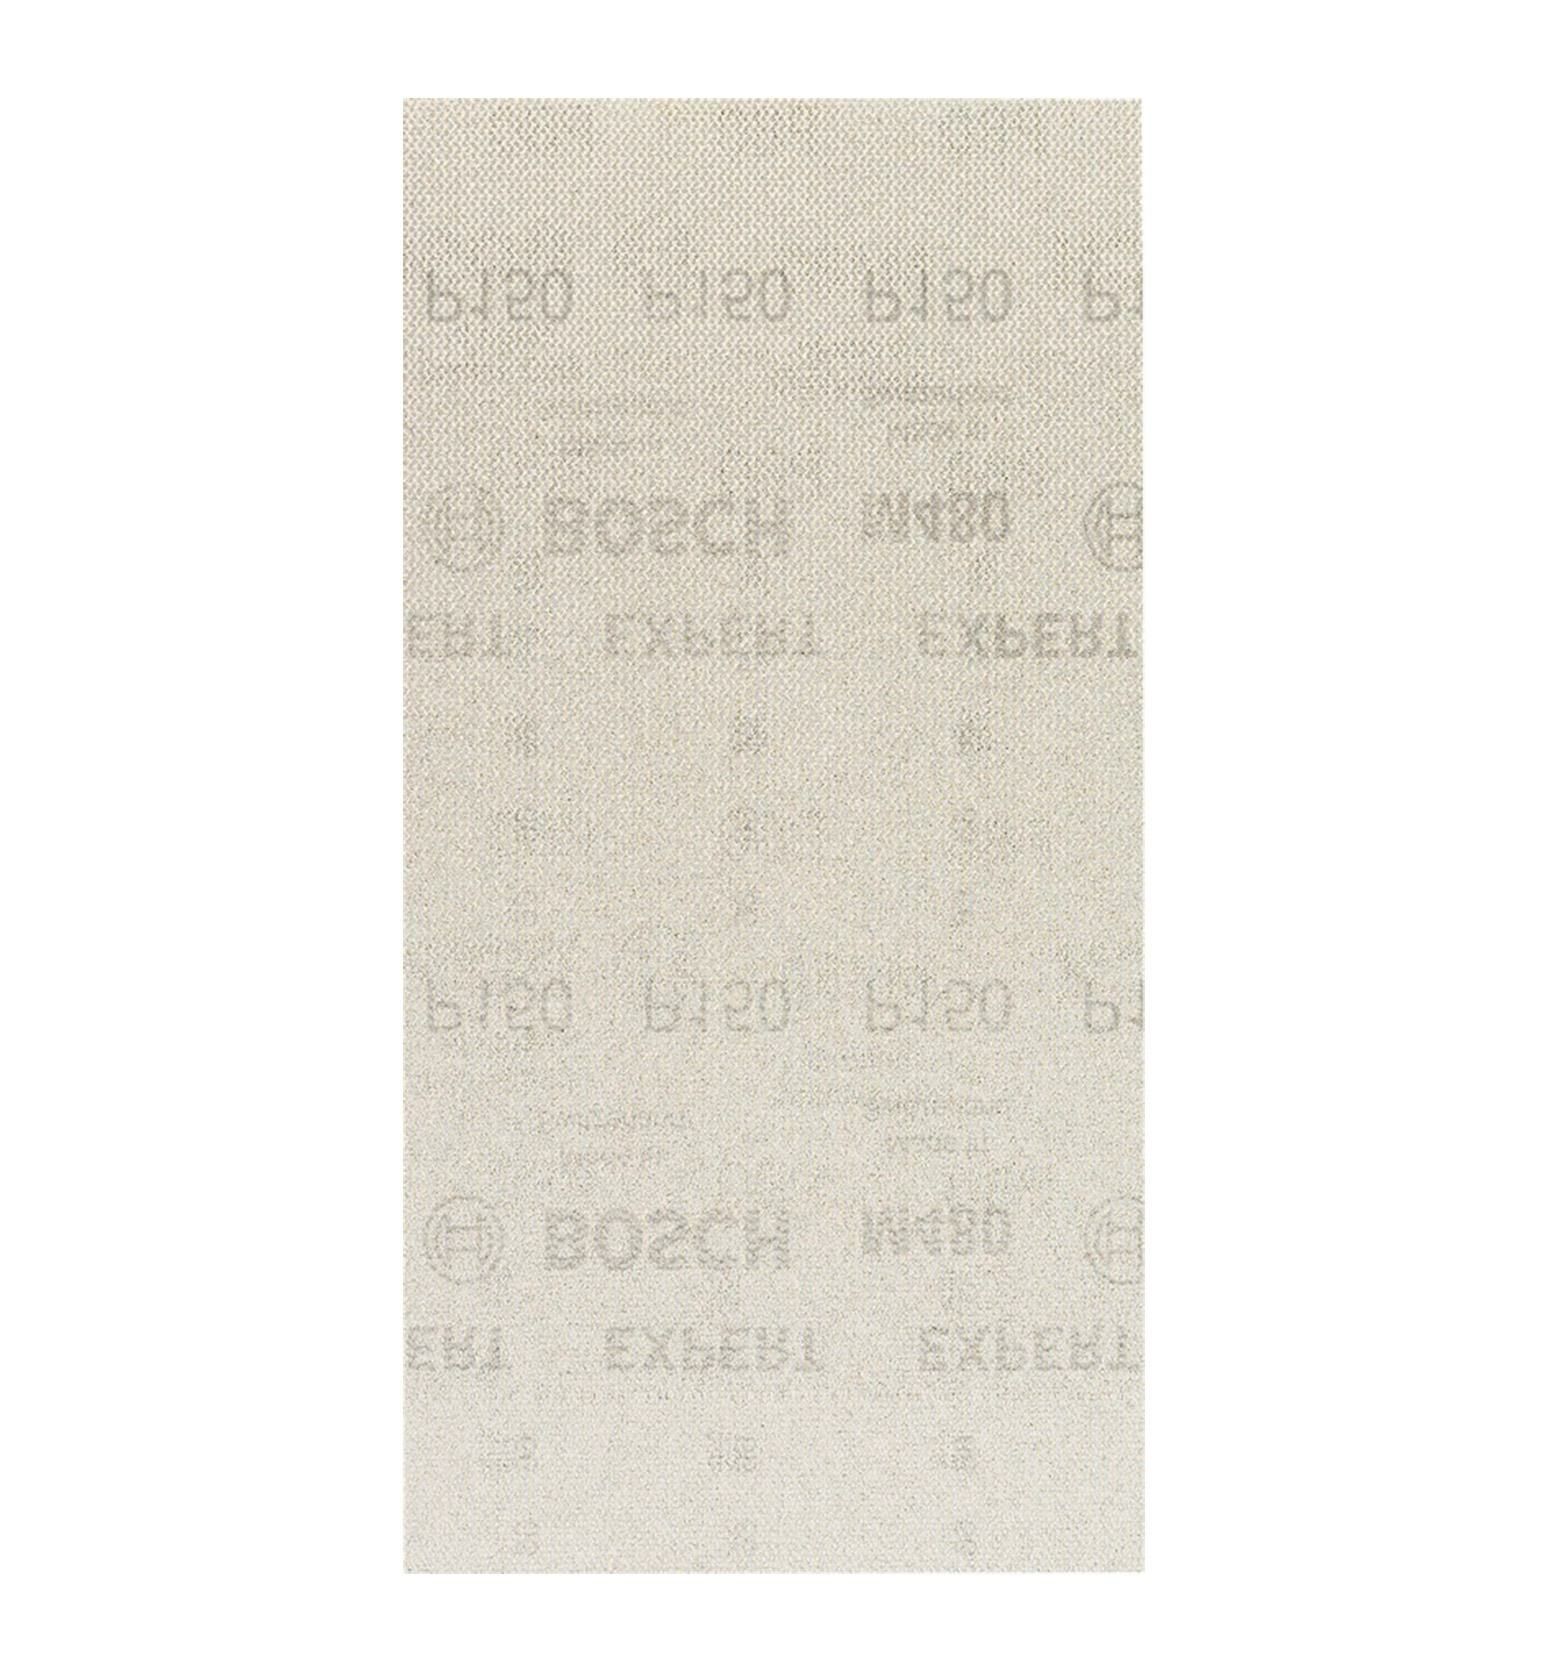 Bosch M480 115x230 mm 150 kum Elek Telli Ağ Zımpara 2608900764